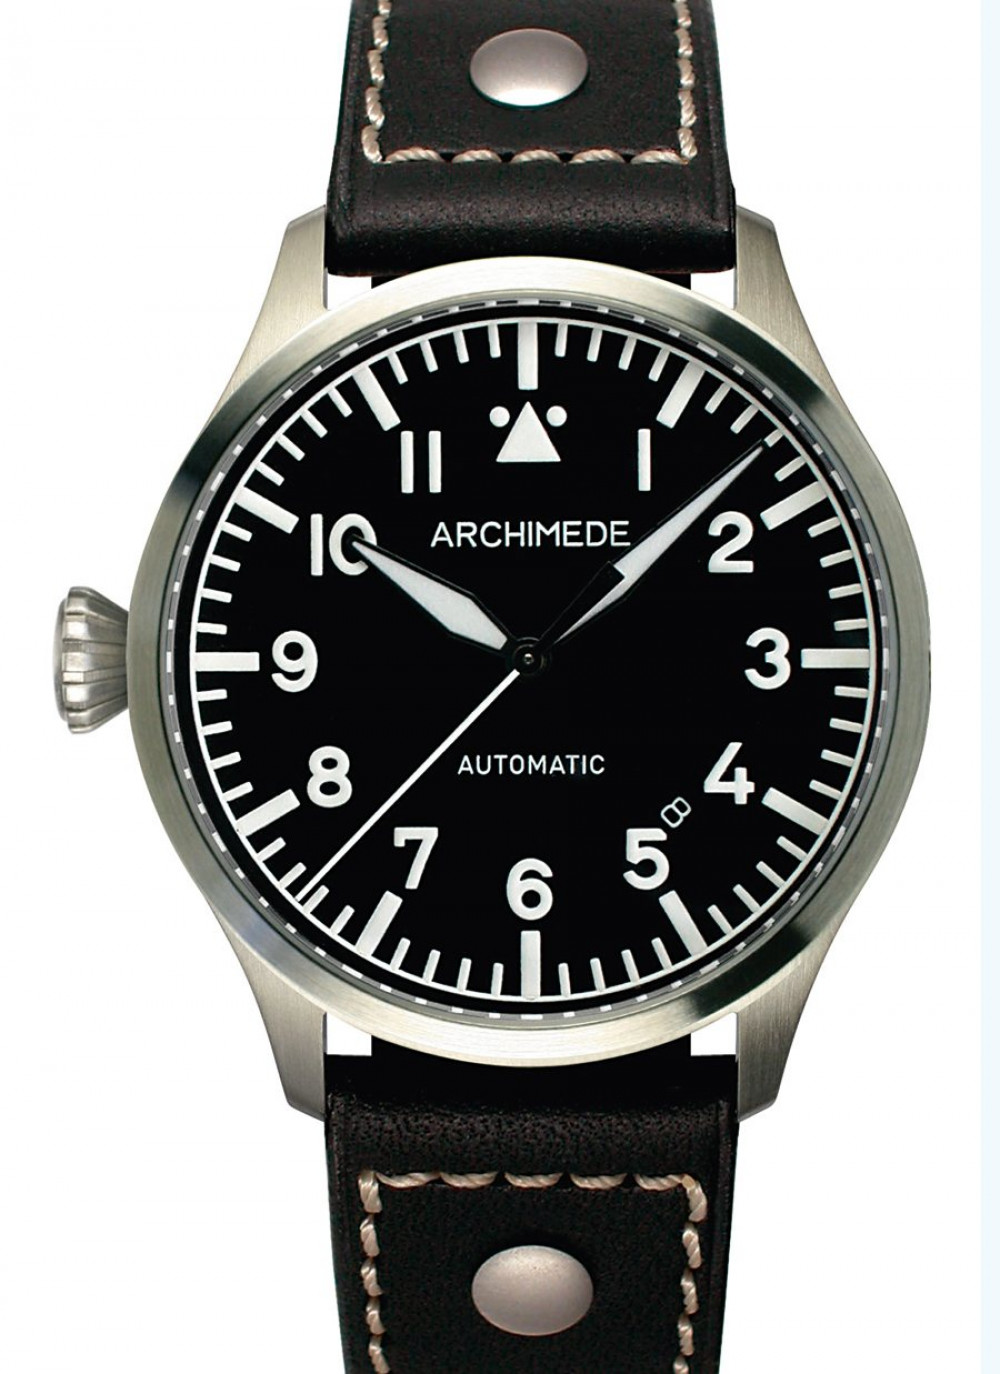 Zegarek firmy Archimede, model Pilot 39 L